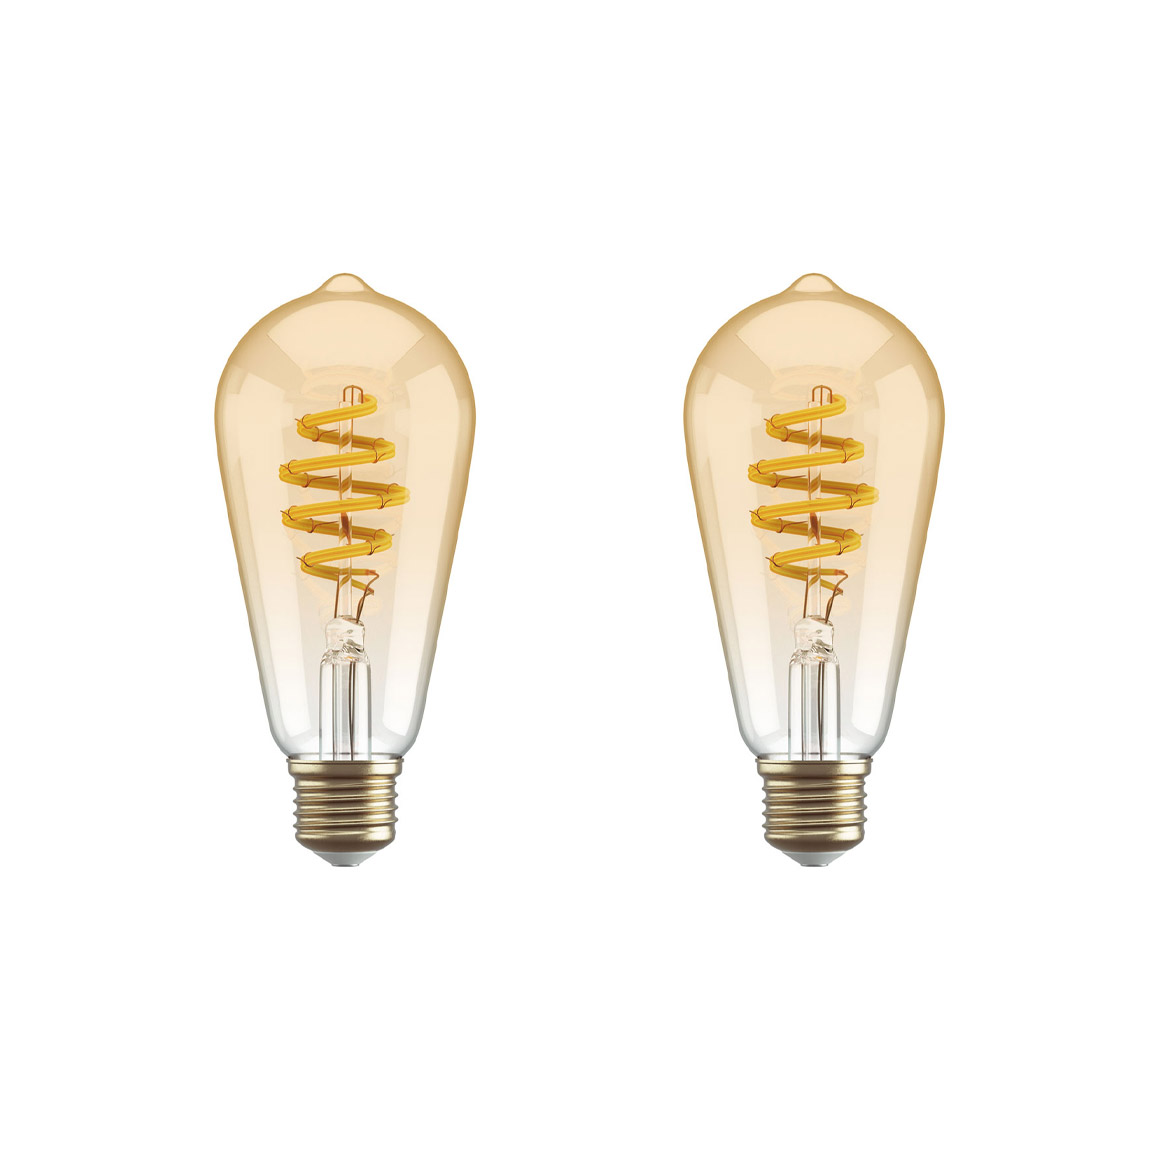 Hombli Smart Bulb Amber ST64 2-pack